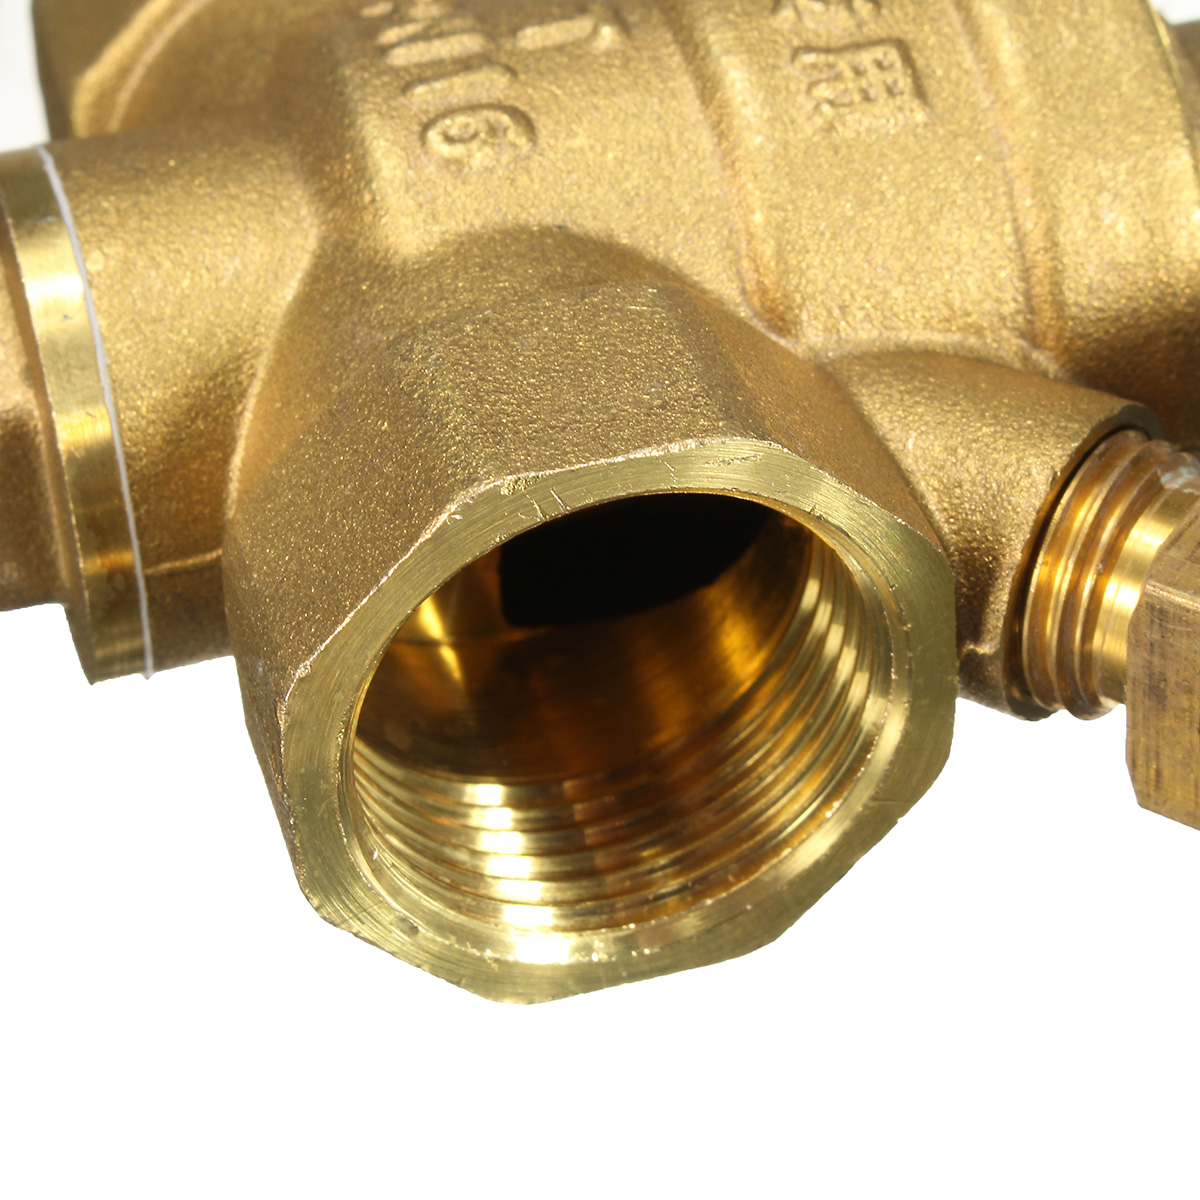 DN20-NPT-34quot-Adjustable-Brass-Water-Pressure-Regulator-Reducer-with-Gauge-Meter-1135674-7